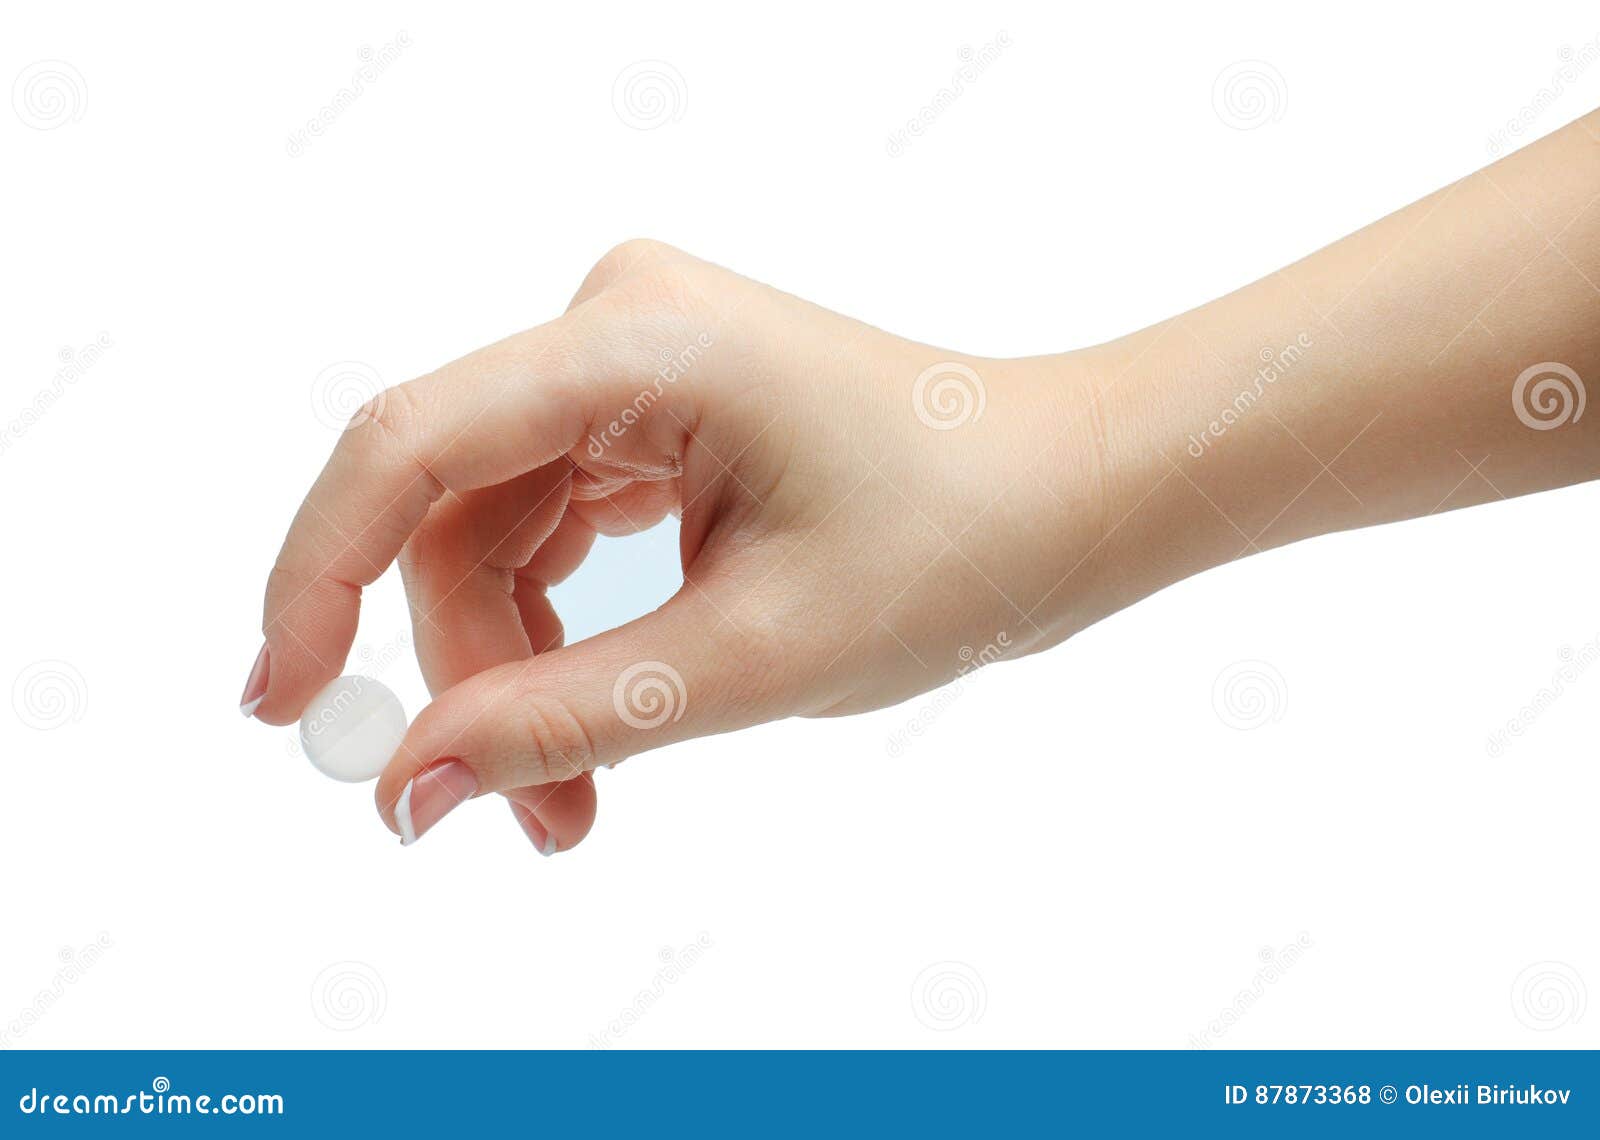 Его можно держать и заставлять вращаться пальцами. Пальцы держат. Рука держит пальцами. Женская рука держит. Пальцы держат таблетку.